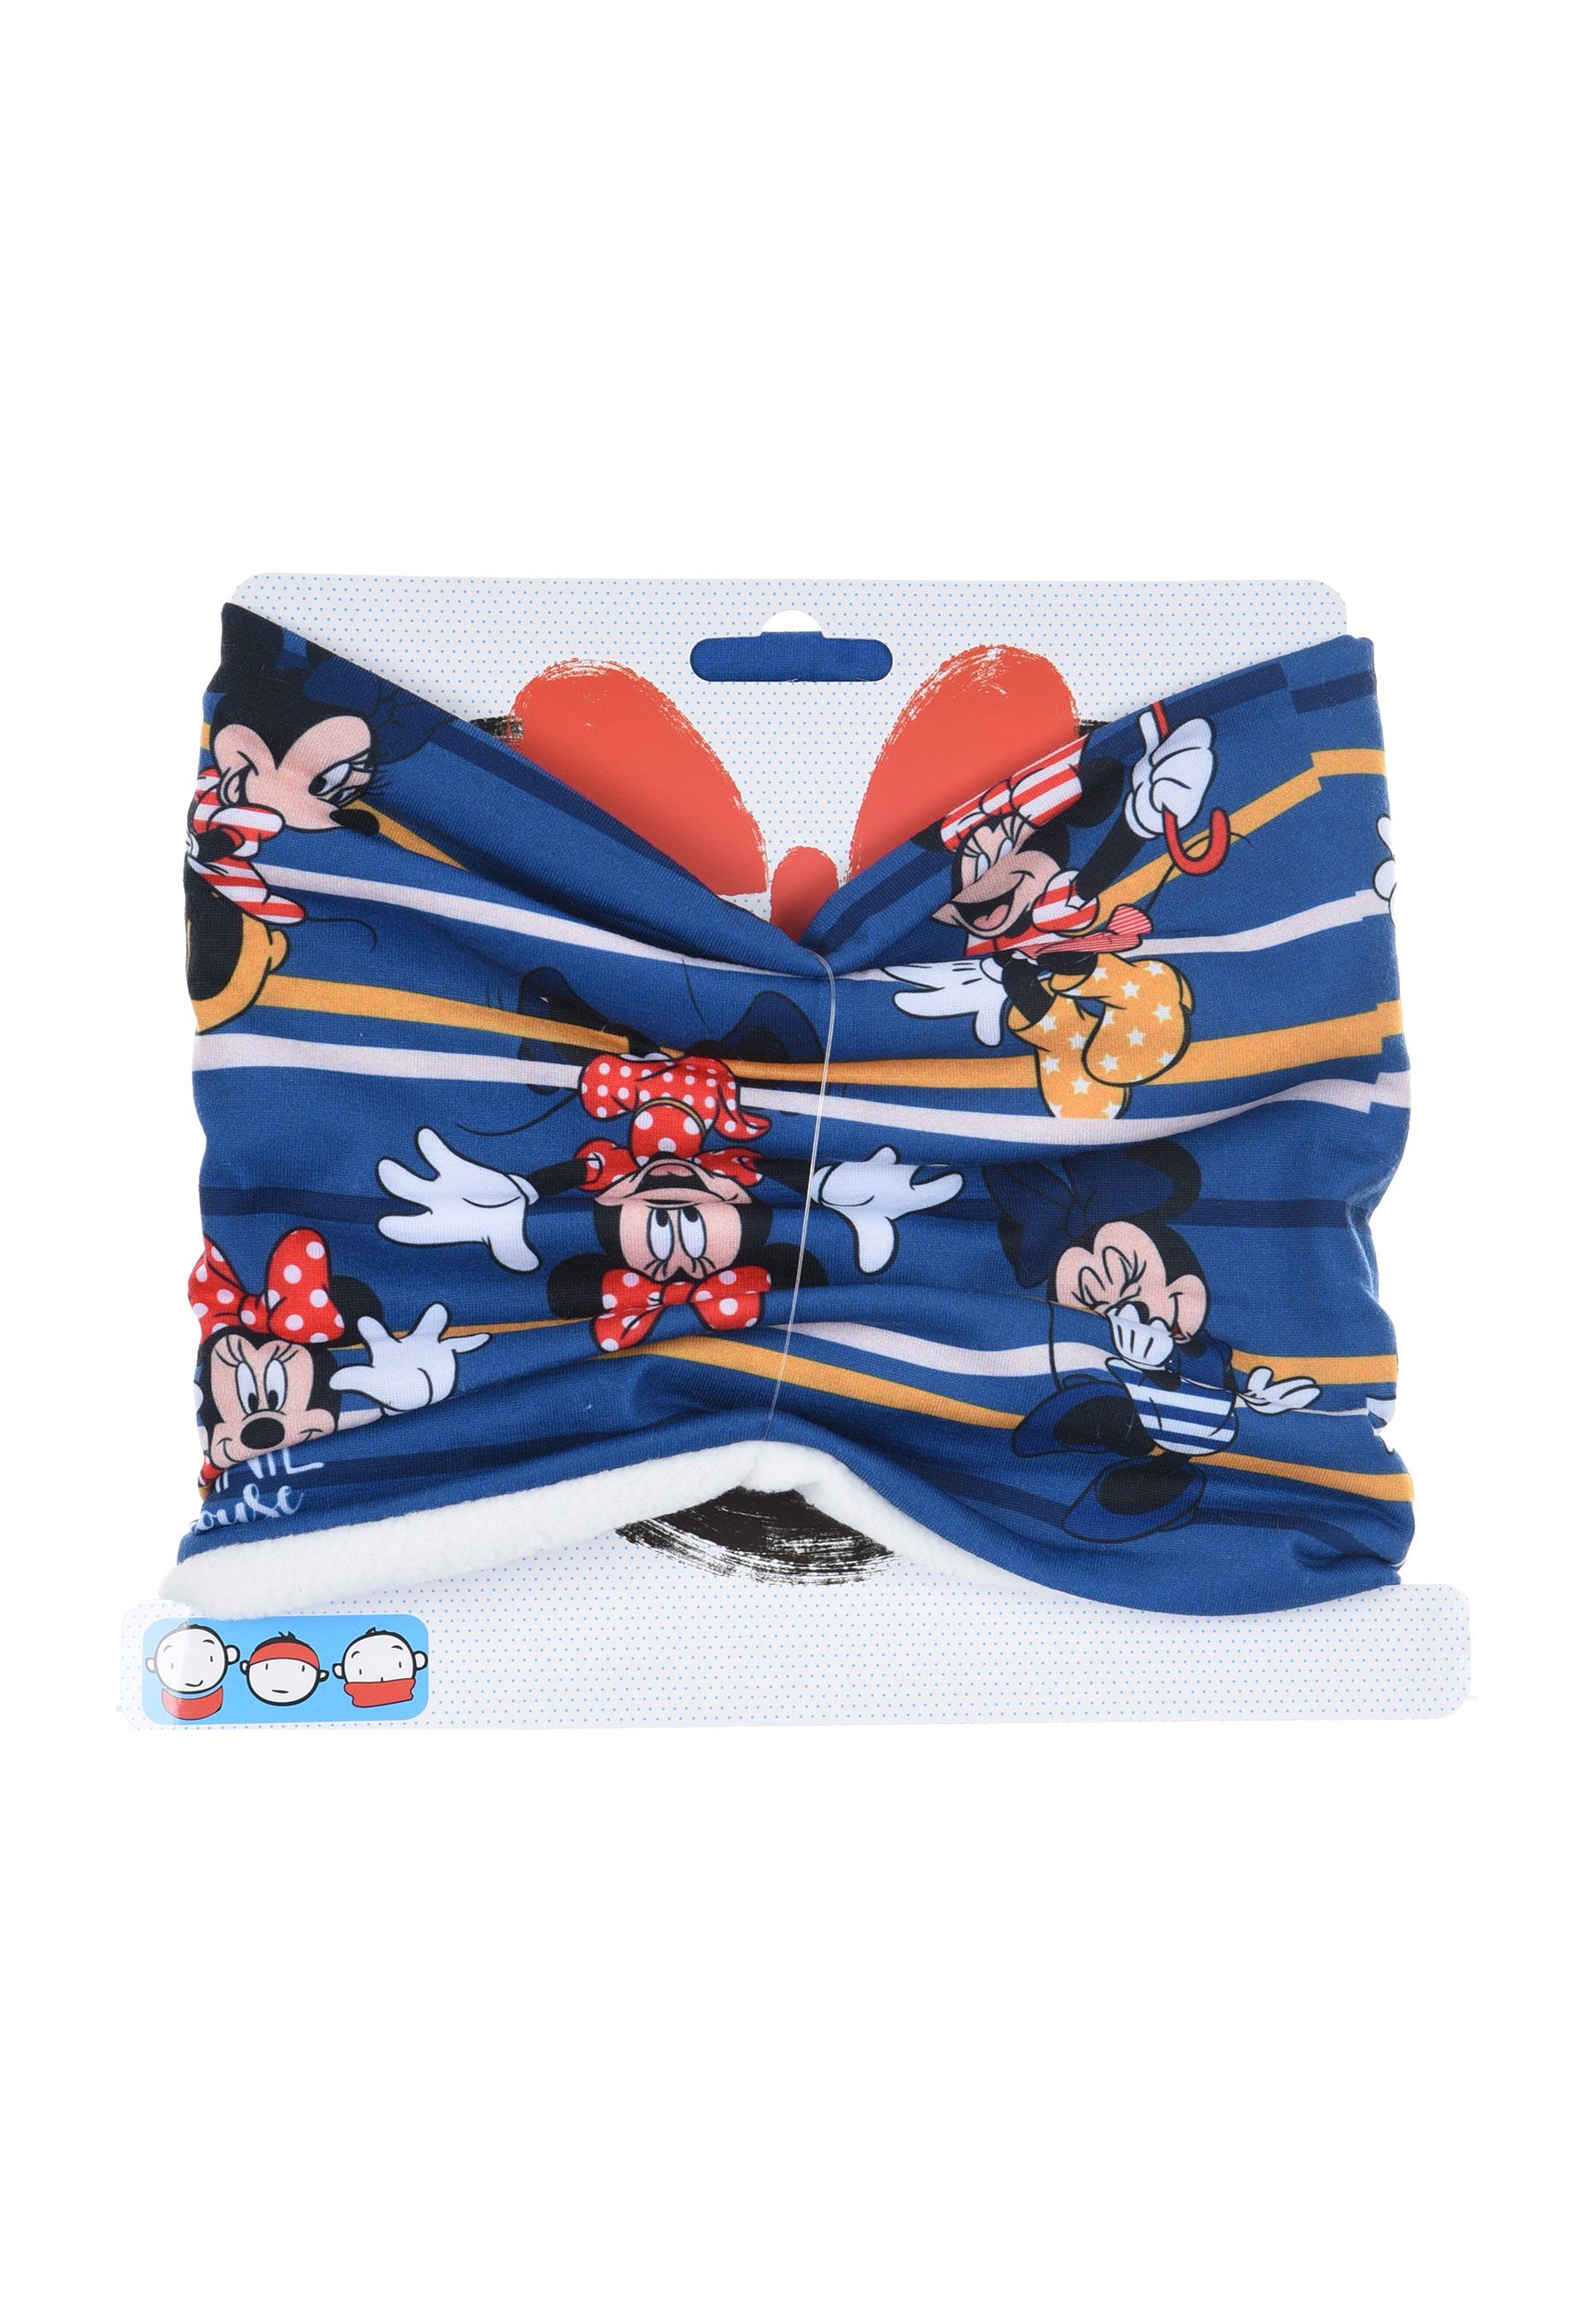 Winter-Schal Maus Loop Mini Minnie Schlauch-Schal, Blau Kinder Disney Mouse Mädchen